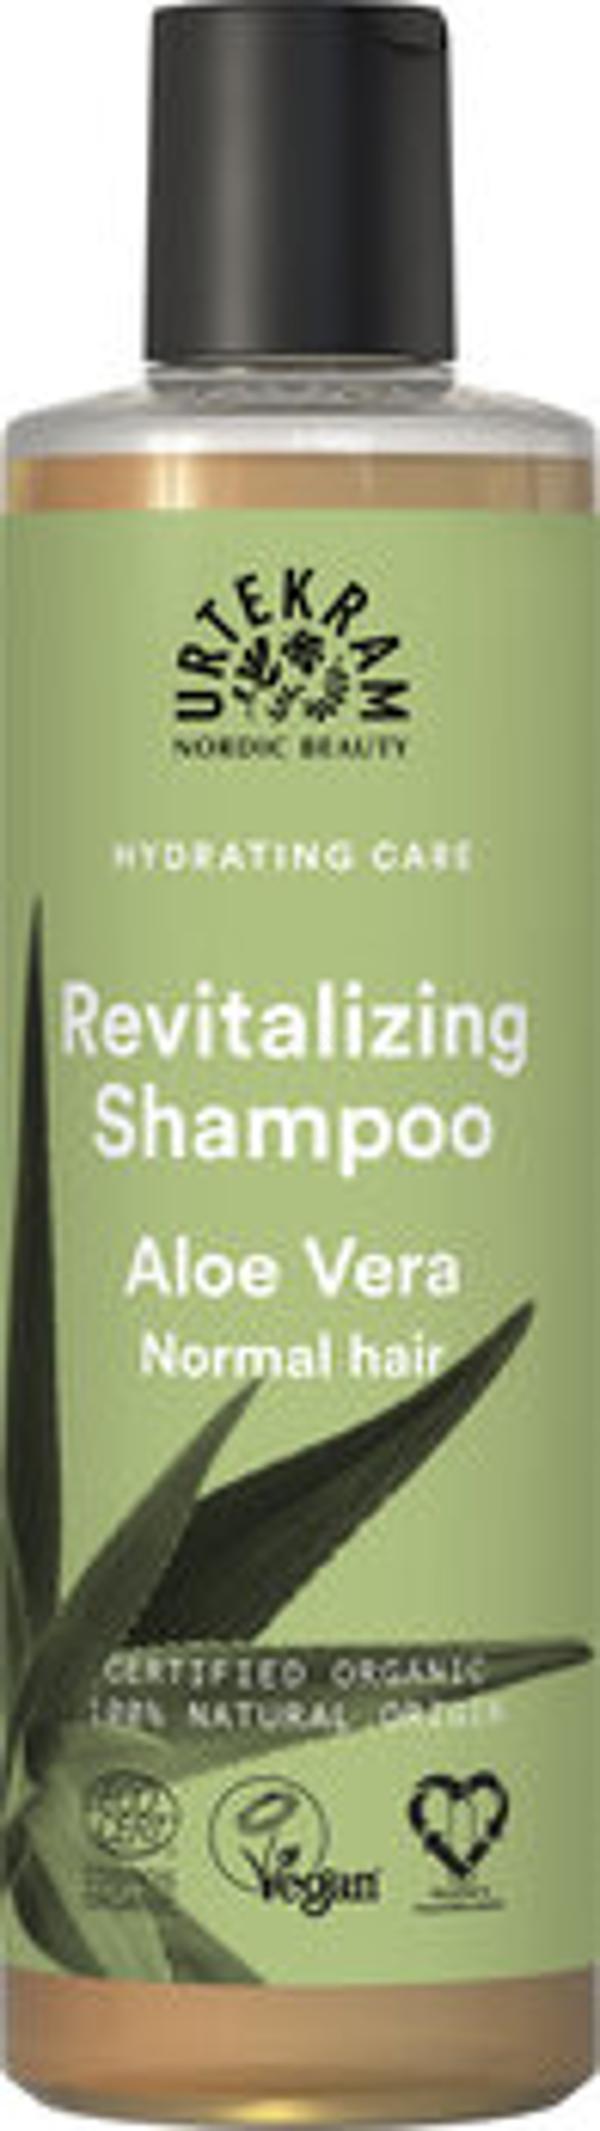 Produktfoto zu Aloe Vera Shampoo für normales Haar 250ml